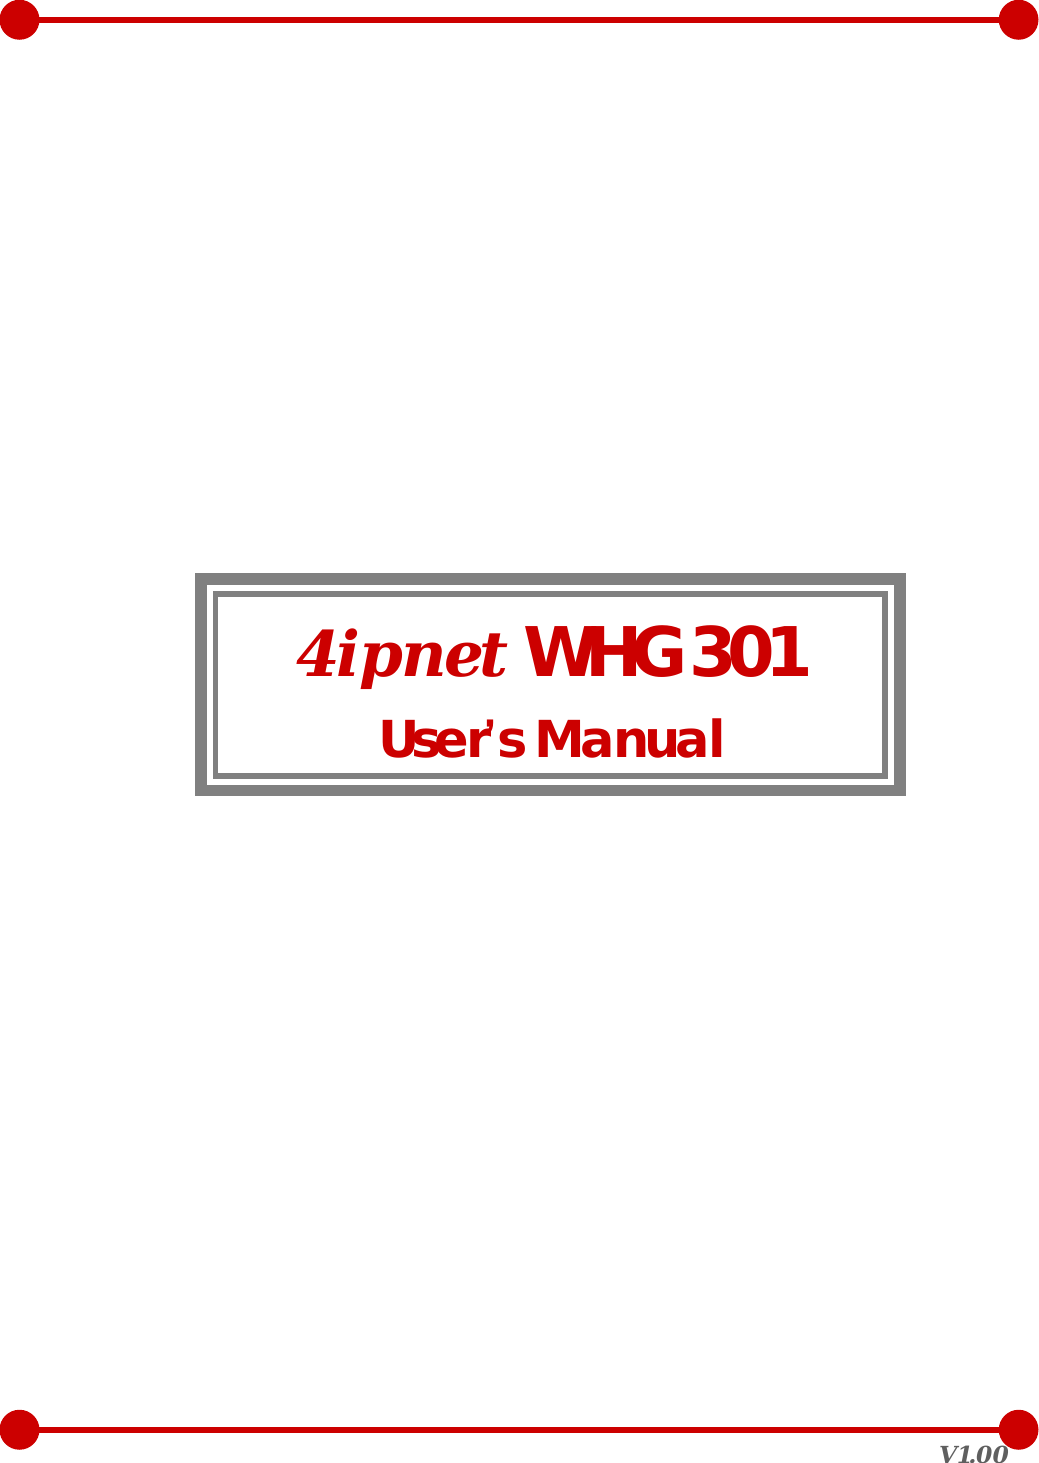  V1.00                 4ipnet WHG301 User’s Manual    